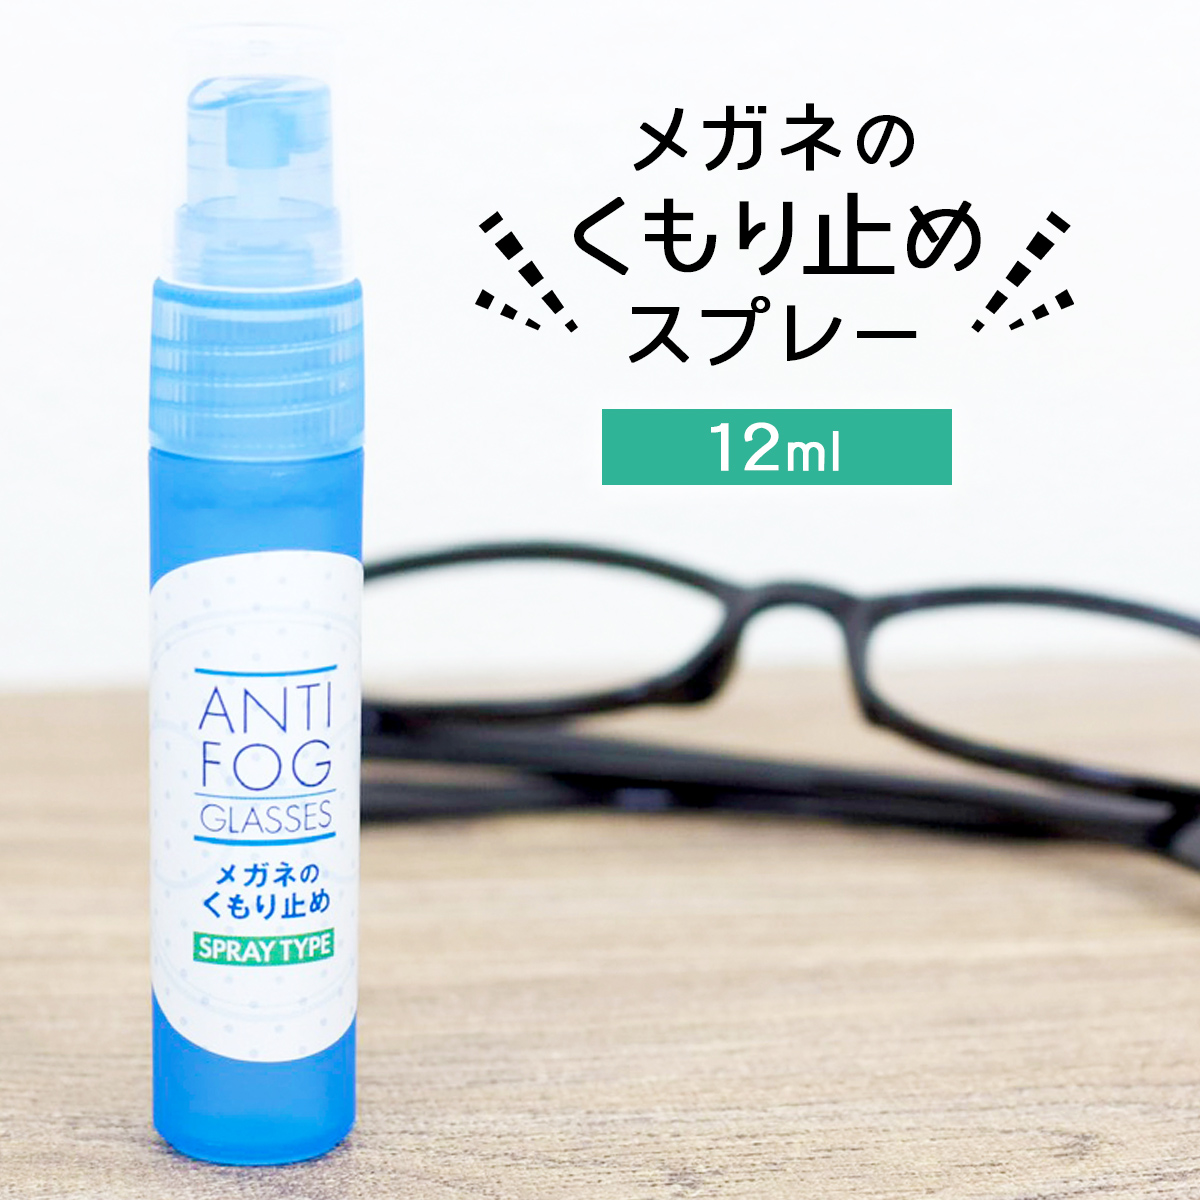 強力 メガネ 曇り止め スプレー 12ml 眼鏡 めがね マスク 曇らない くもり止め 曇り防止 最強 日本製 アンチフォグ レンズ 対策グッズ